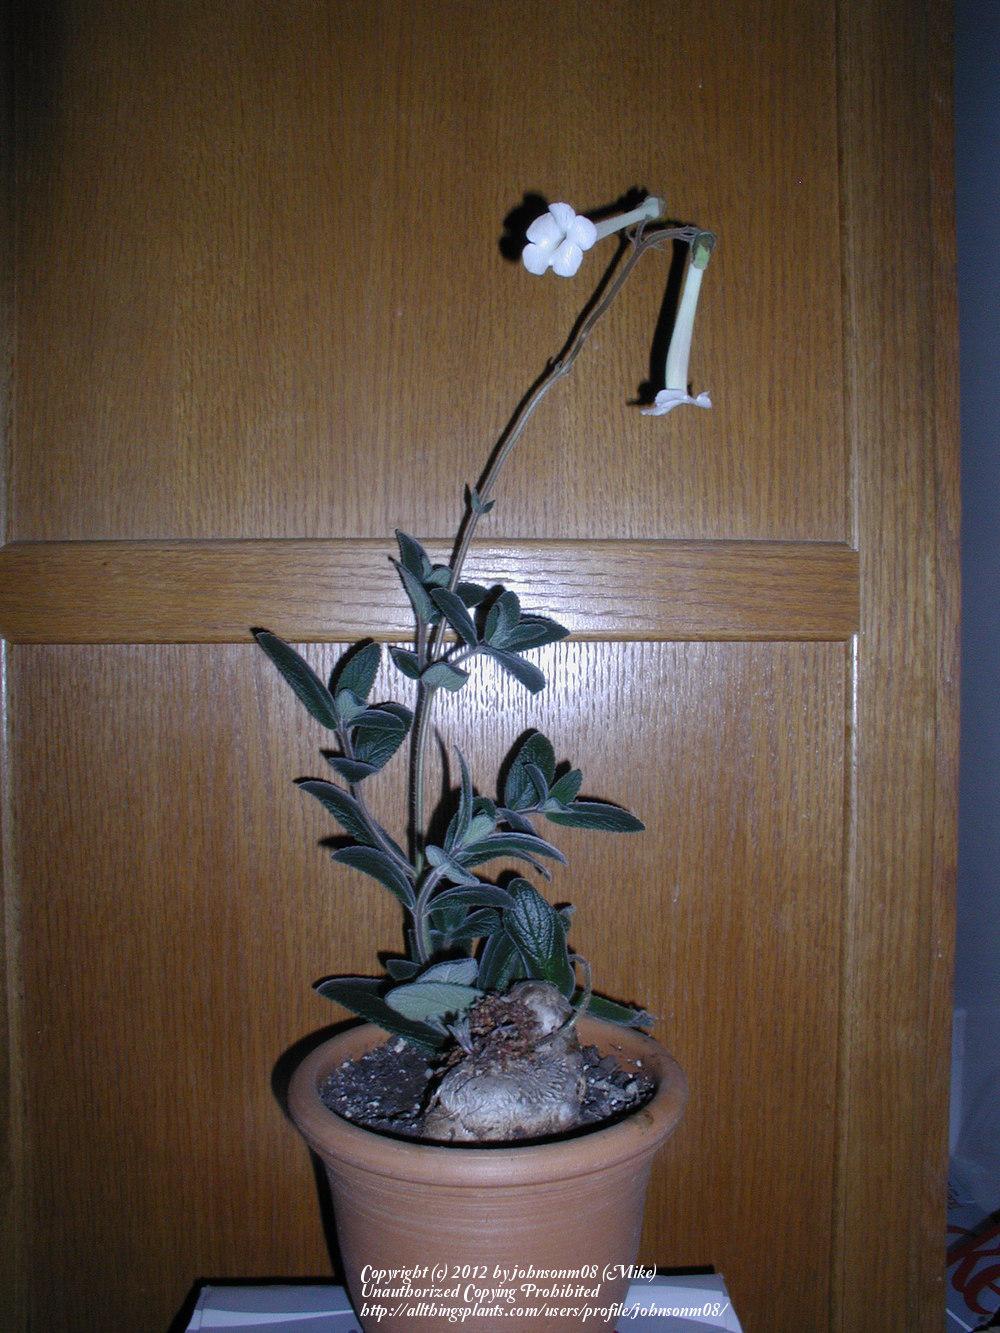 Photo of Hardy White Gloxinia (Sinningia tubiflora) uploaded by johnsonm08